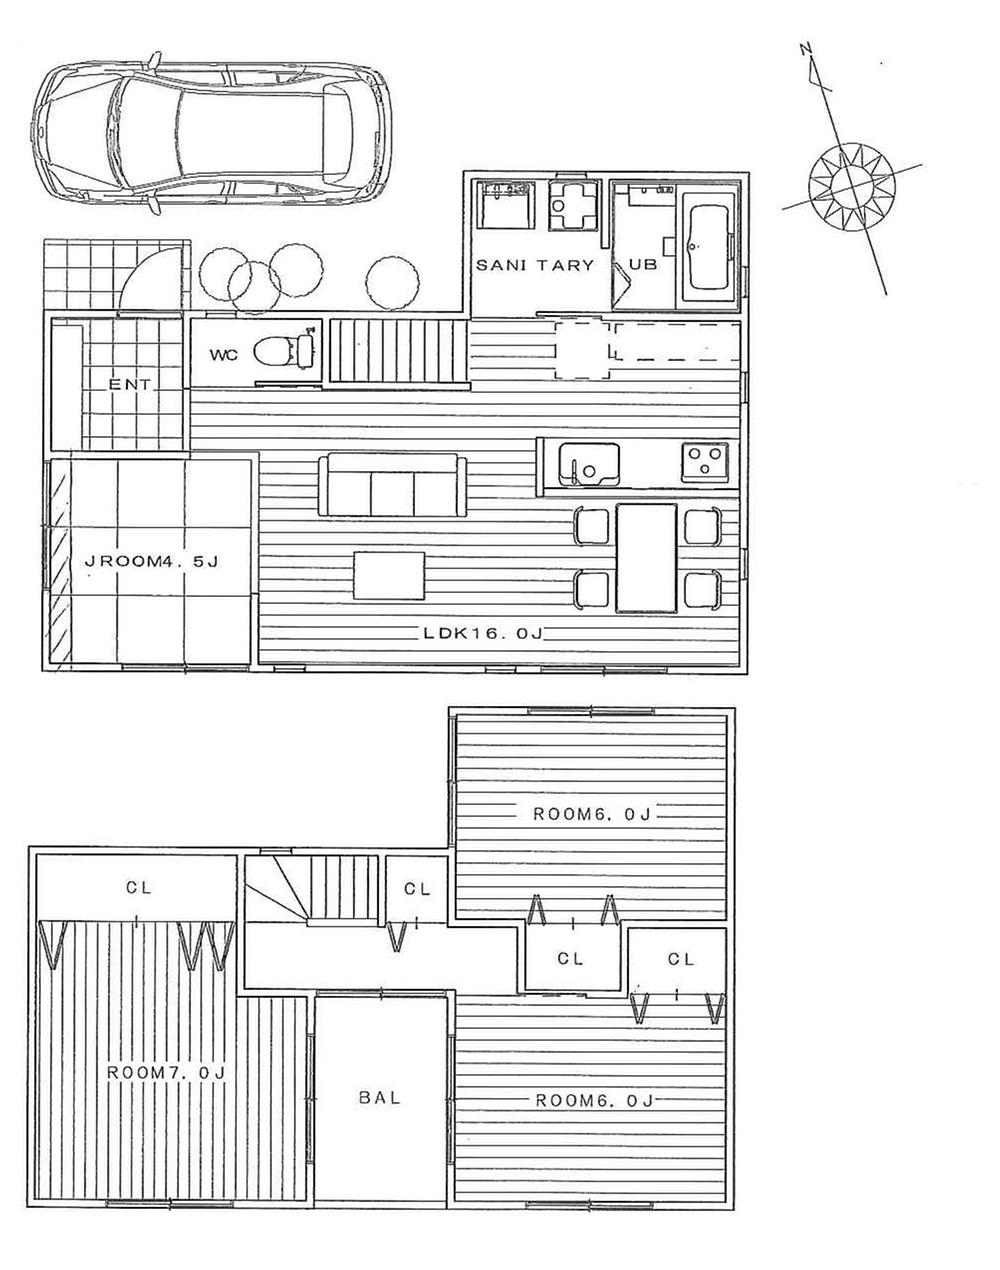 Floor plan. 32,800,000 yen, 4LDK, Land area 117.47 sq m , Building area 89.1 sq m building plan view